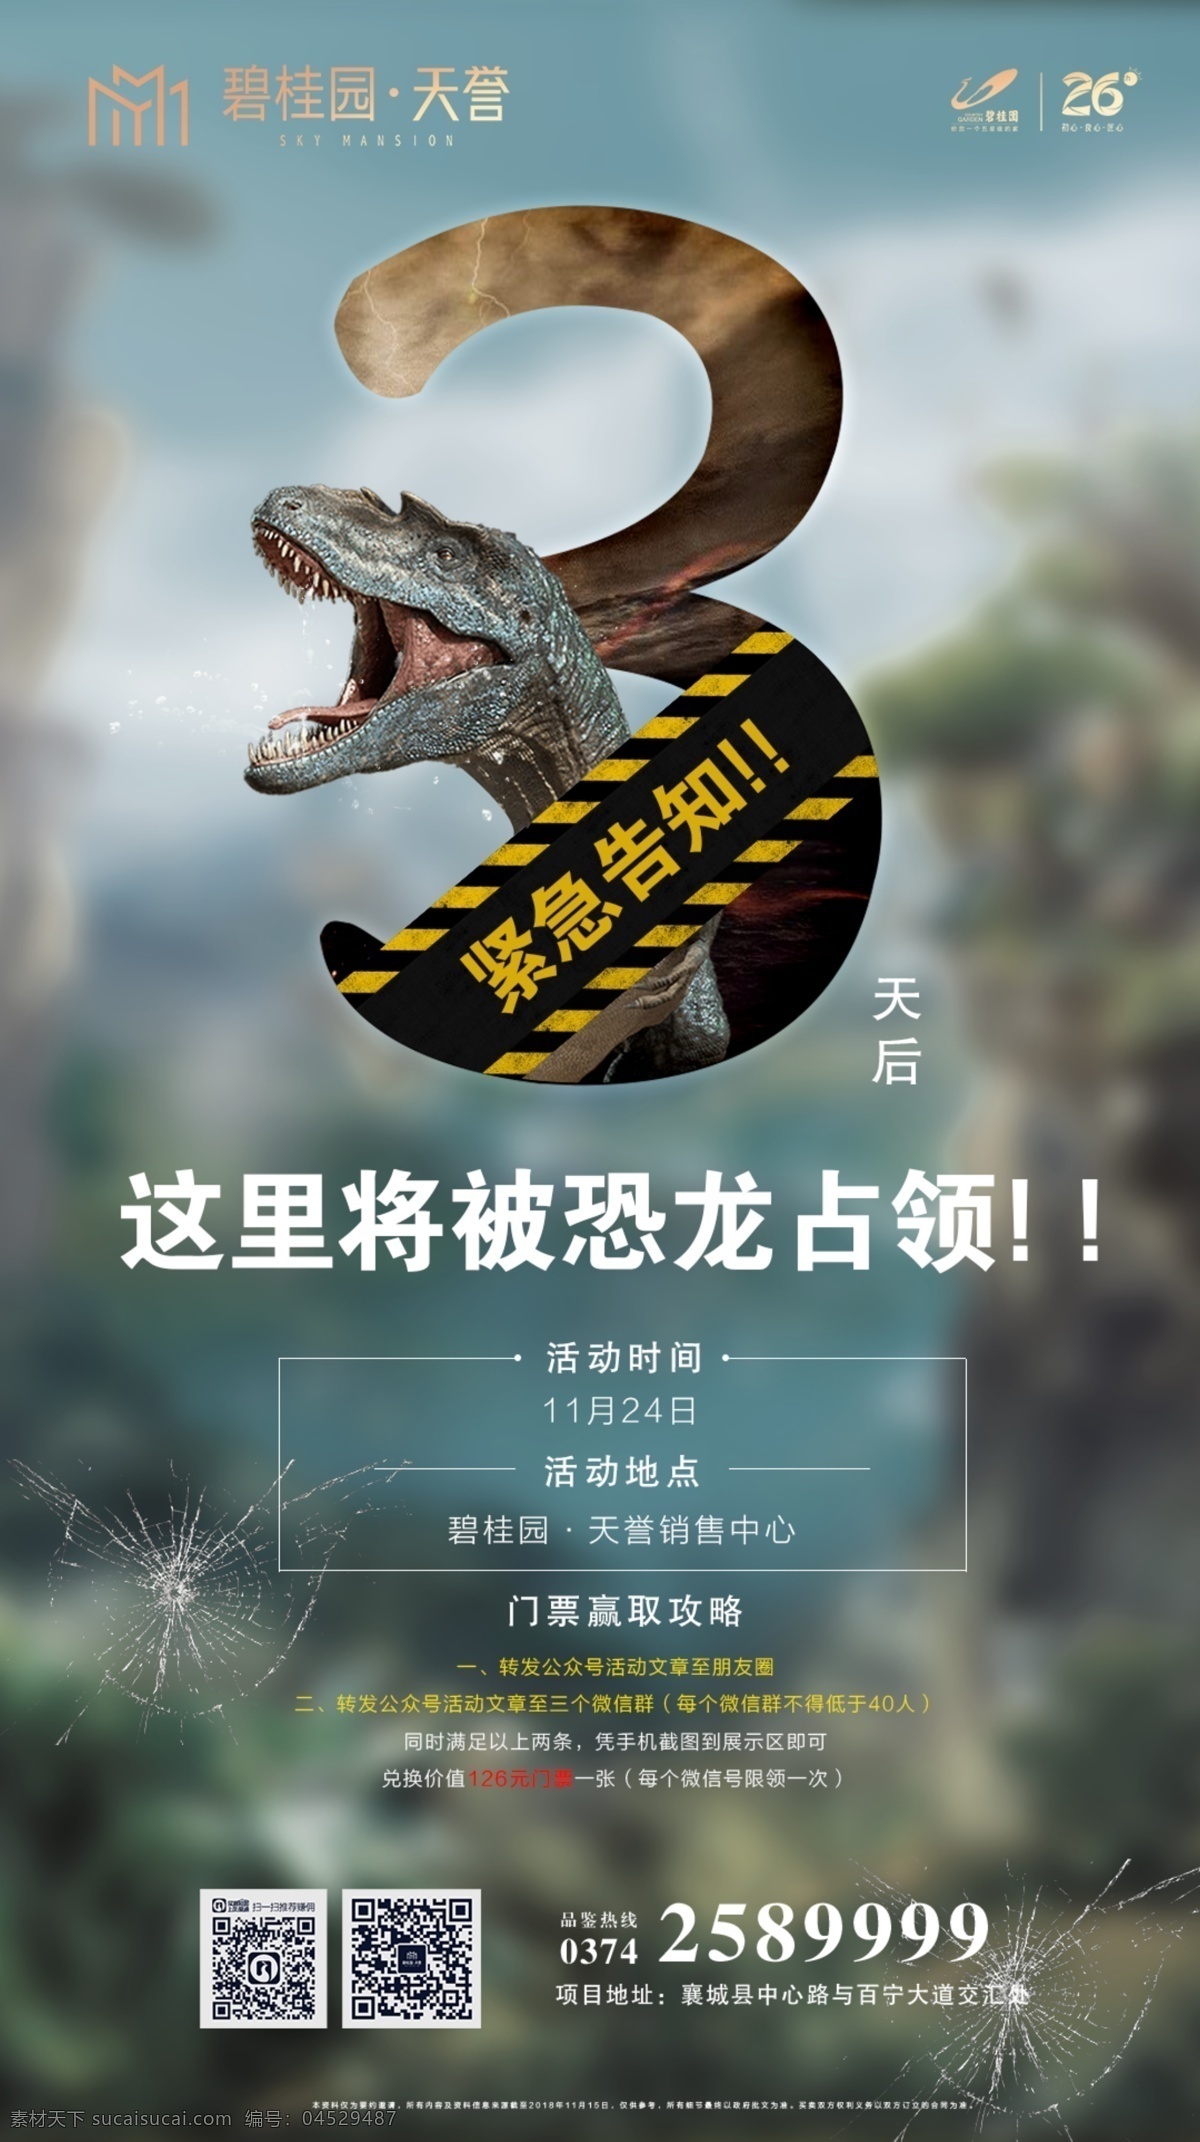 恐龙 倒计时 海报 房地产 倒计时海报 恐龙展 宣传 侏罗纪世界 平面设计 恐龙园 展架 分层